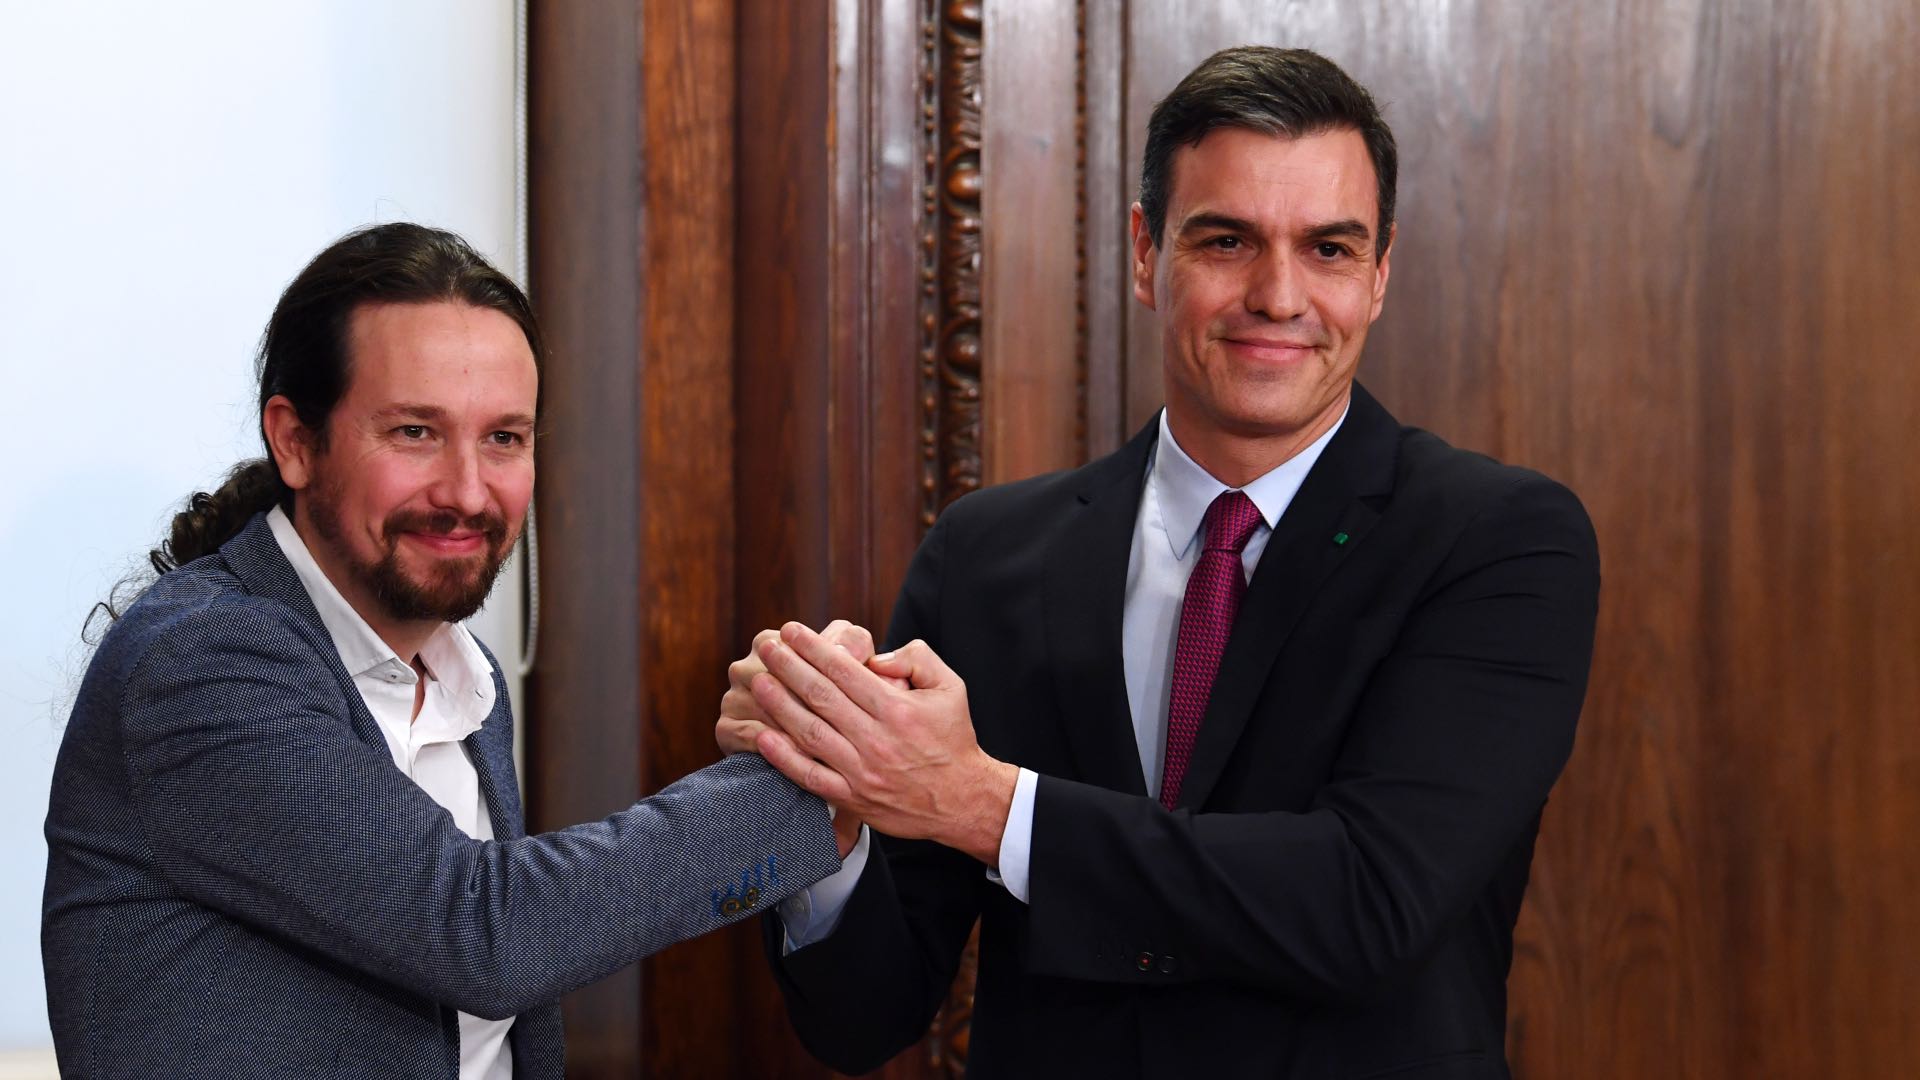 Sánchez, sobre el acuerdo de Gobierno con Podemos: "Es una oportunidad para revitalizar la vida política"